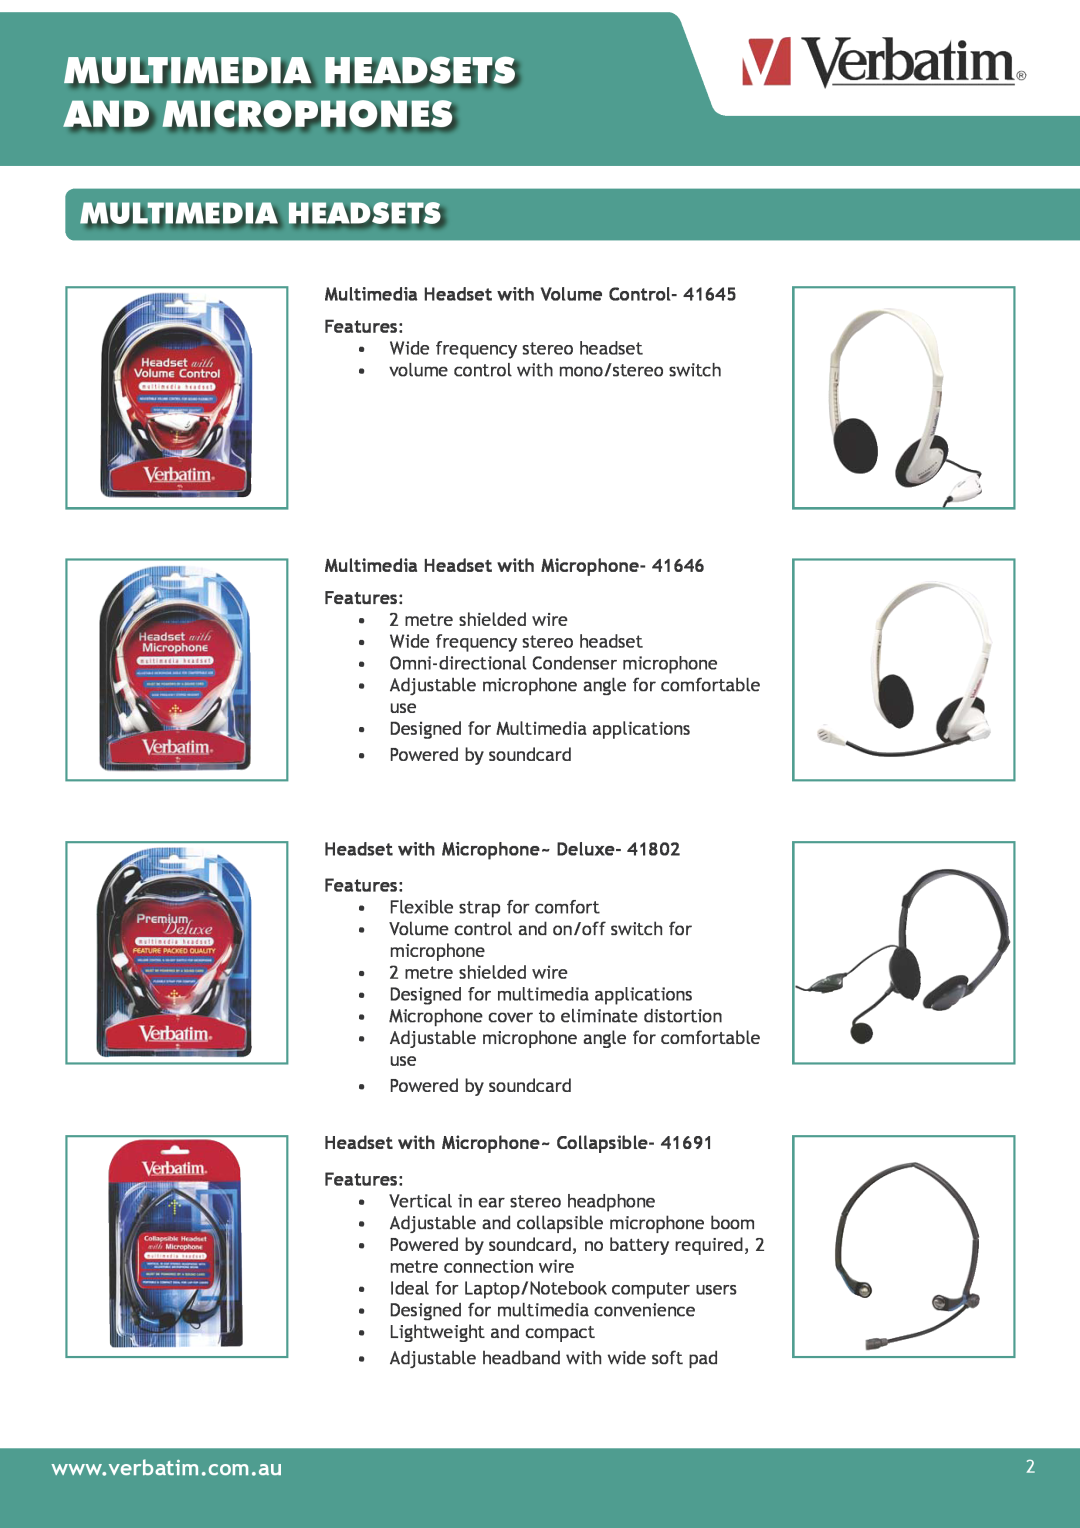 Verbatim Multimedia Headsets & Microphones Multimedia Headsets And Microphones, Headset with Microphone~ Deluxe Features 